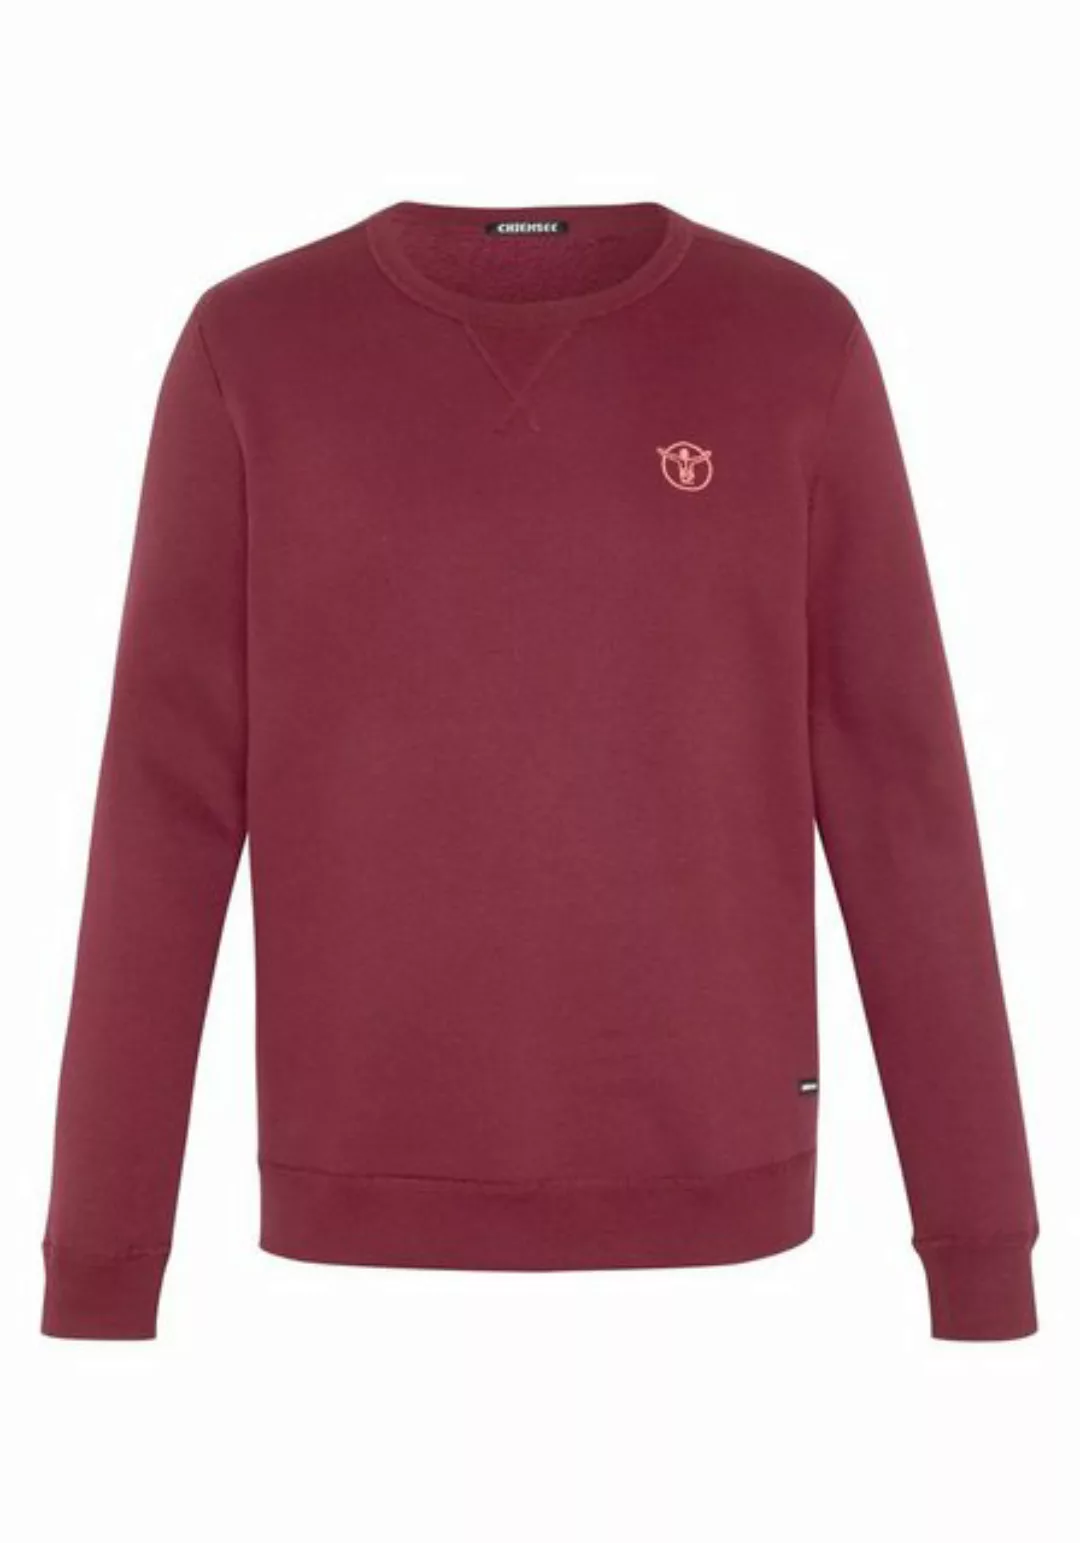 Chiemsee Sweatshirt Sweater im Basic-Look mit Logo-Motiv 1 günstig online kaufen